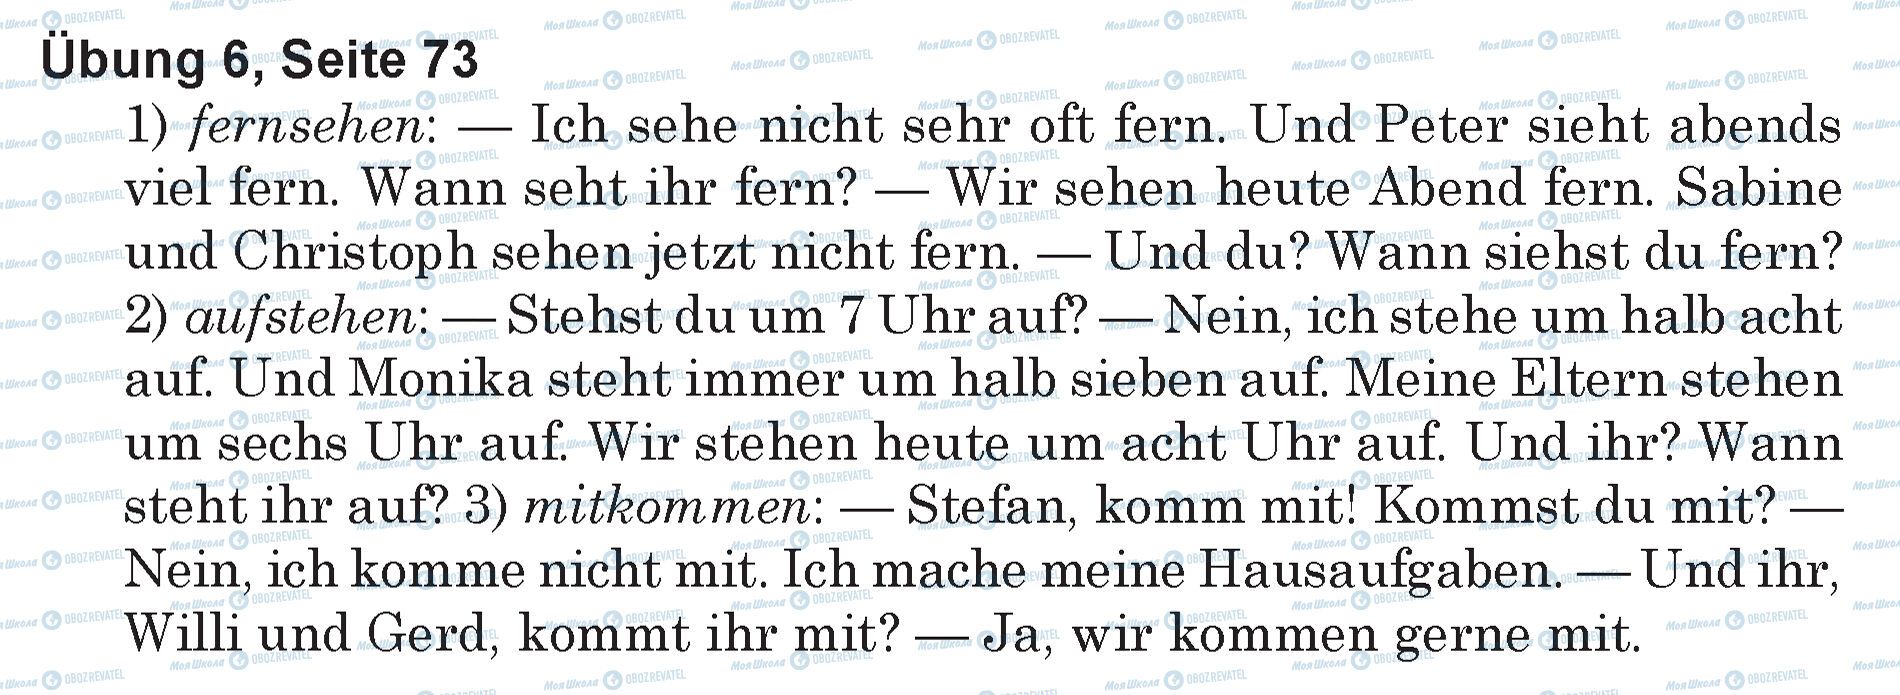 ГДЗ Немецкий язык 5 класс страница Ubung 6, Seite 73